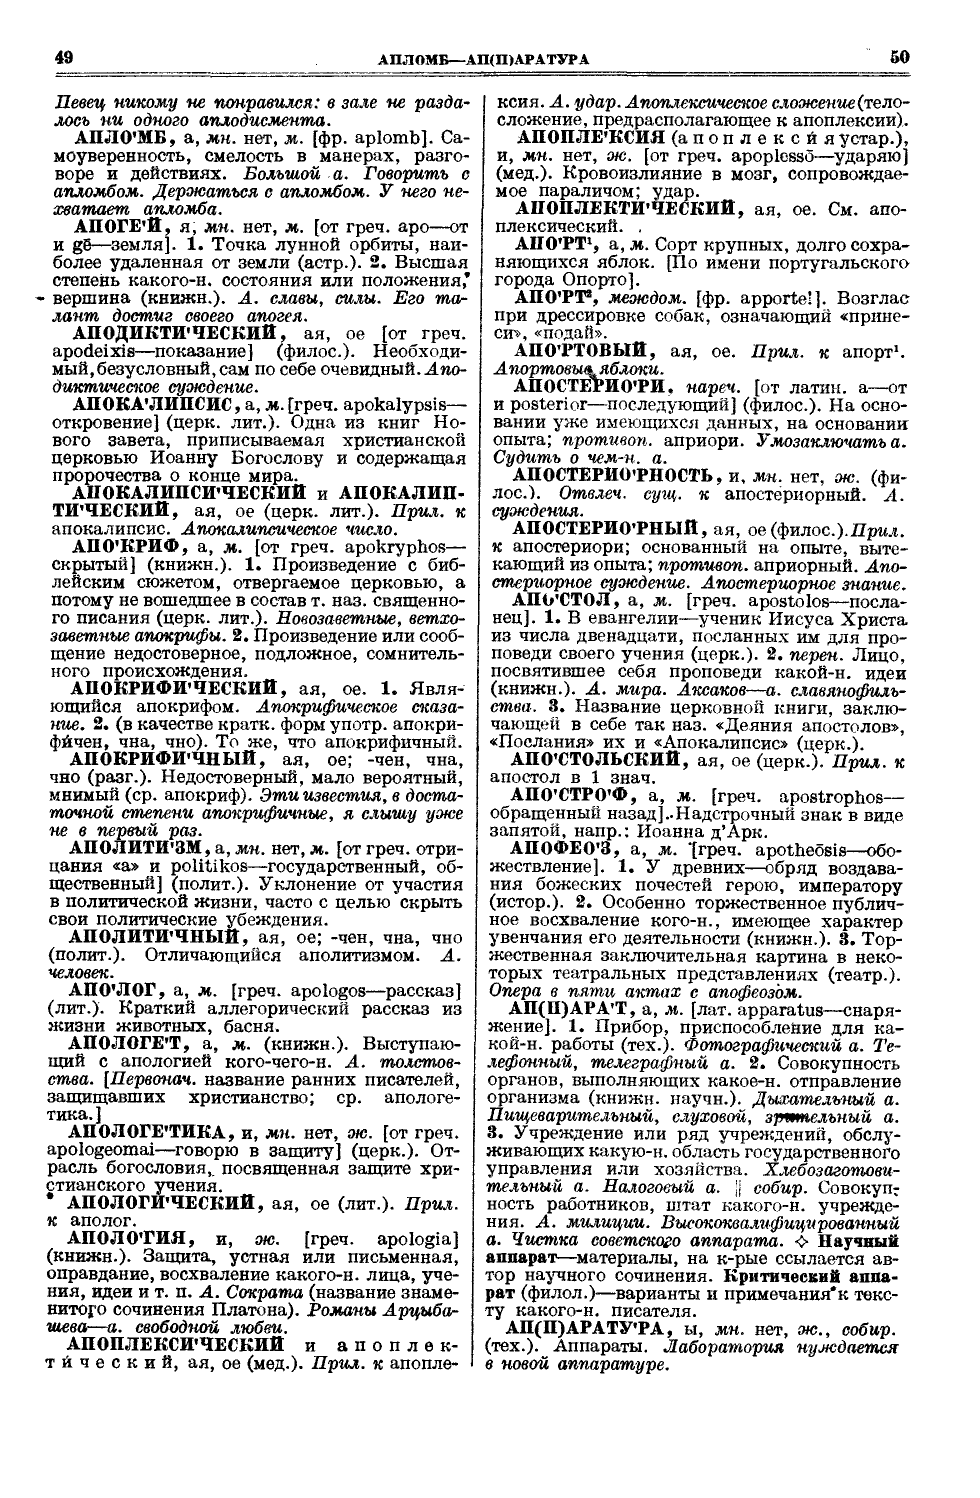 Фотокопия pdf / скан страницы 63 толкового словаря Ушакова (том 1)